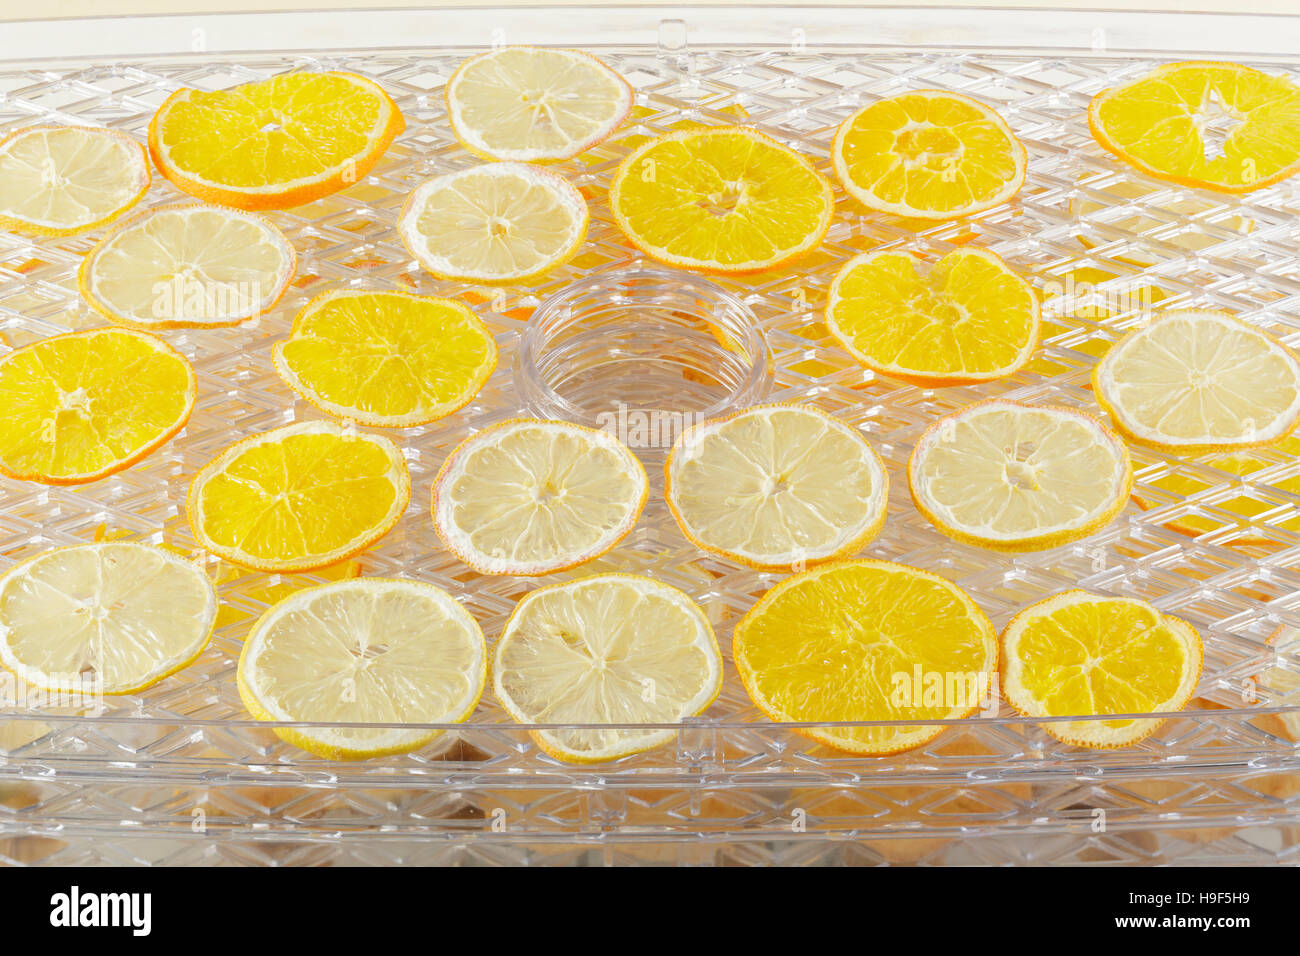 Zitrone und orange Scheiben in einem Dörrgerät trocknen Stockfoto